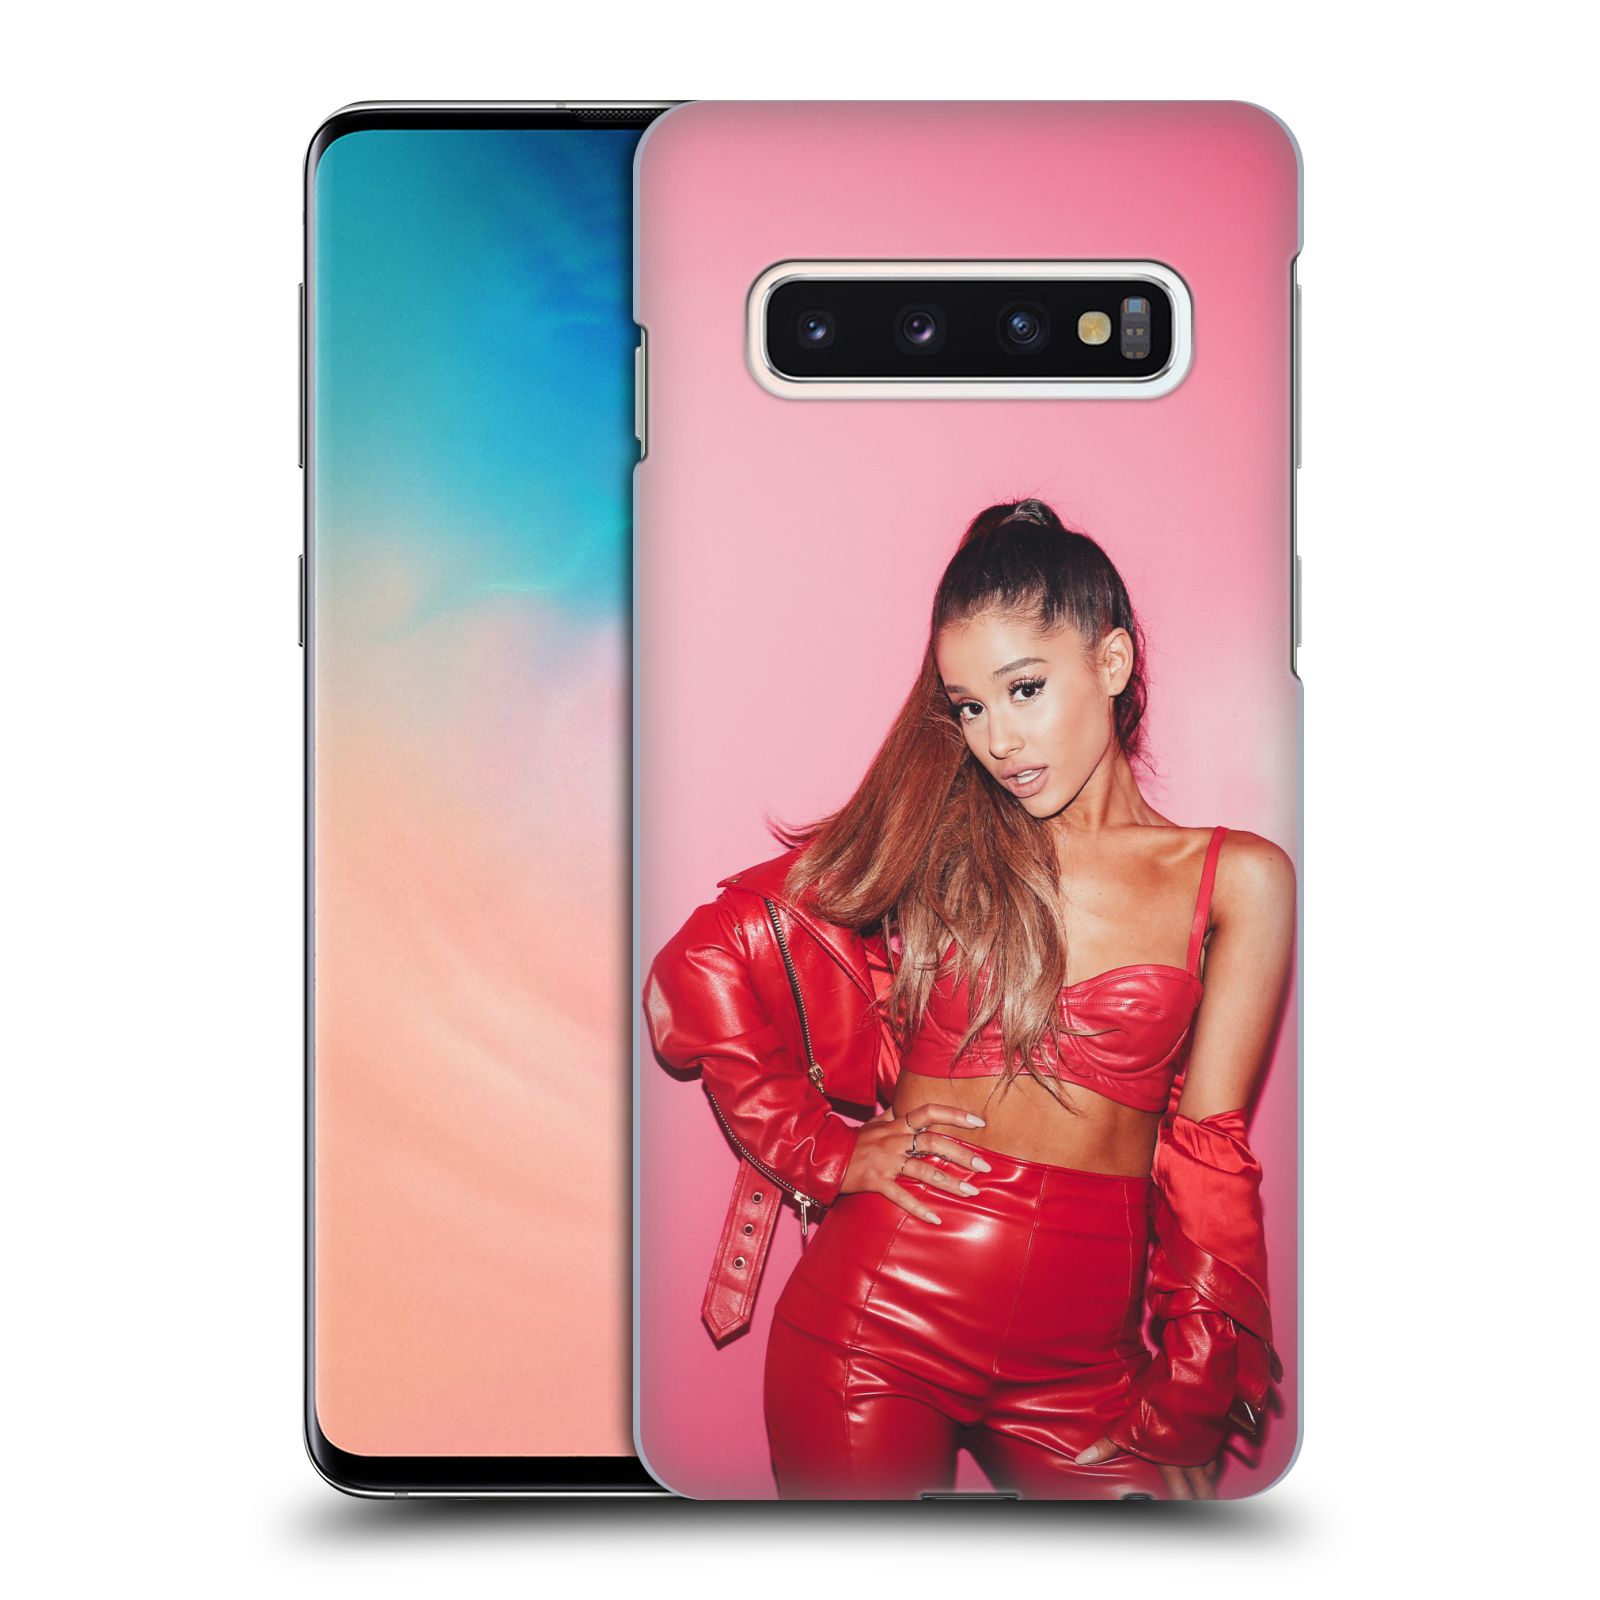 Pouzdro na mobil Samsung Galaxy S10 - HEAD CASE - zpěvačka Ariana Grande Dangerous Woman růžová